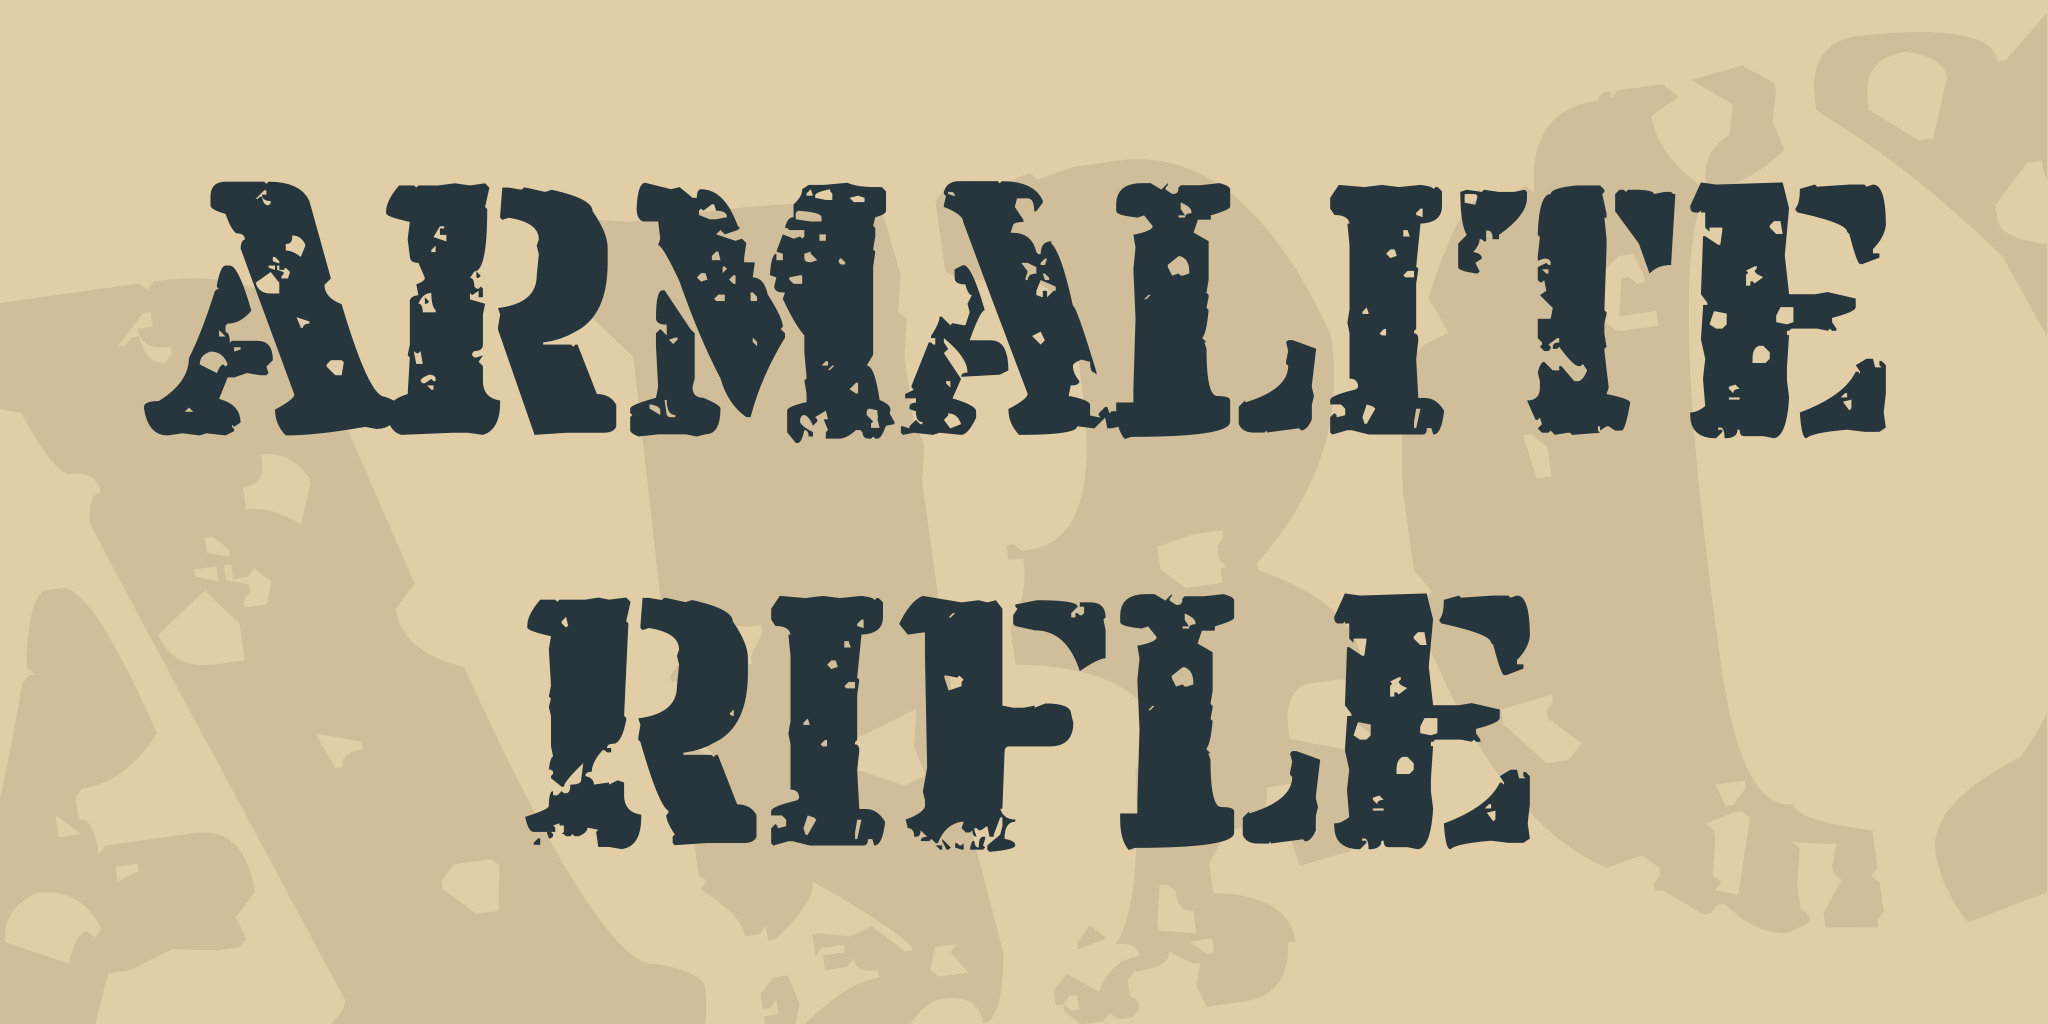 Armalite Rifle